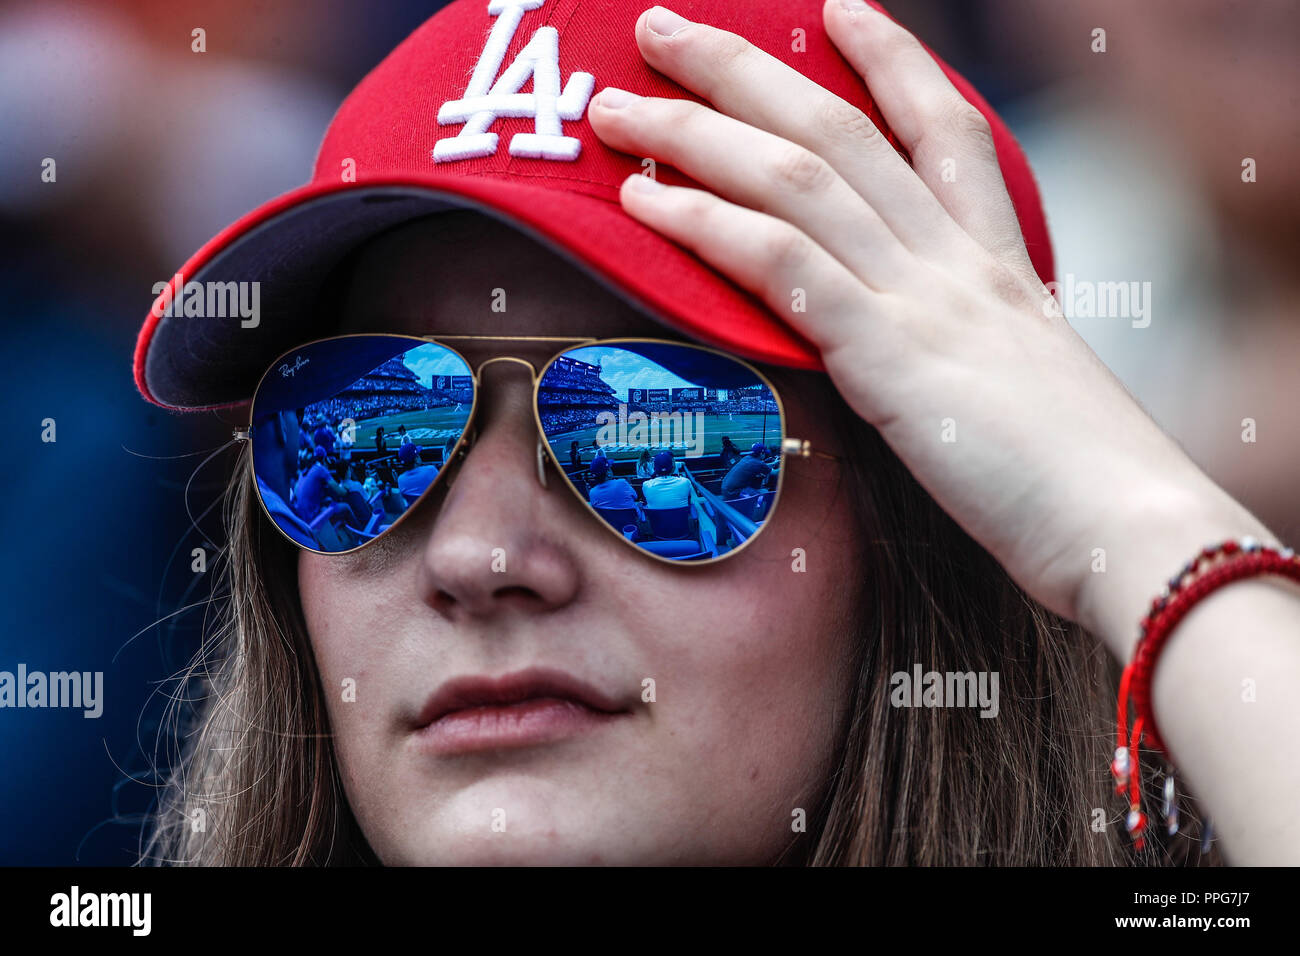 Aficionada de los Dodgers con lentes de sol. Sunglases Acciones del partido de beisbol, Dodgers de Los Angeles contra Padres de San Diego, tercer jueg Stock Photo